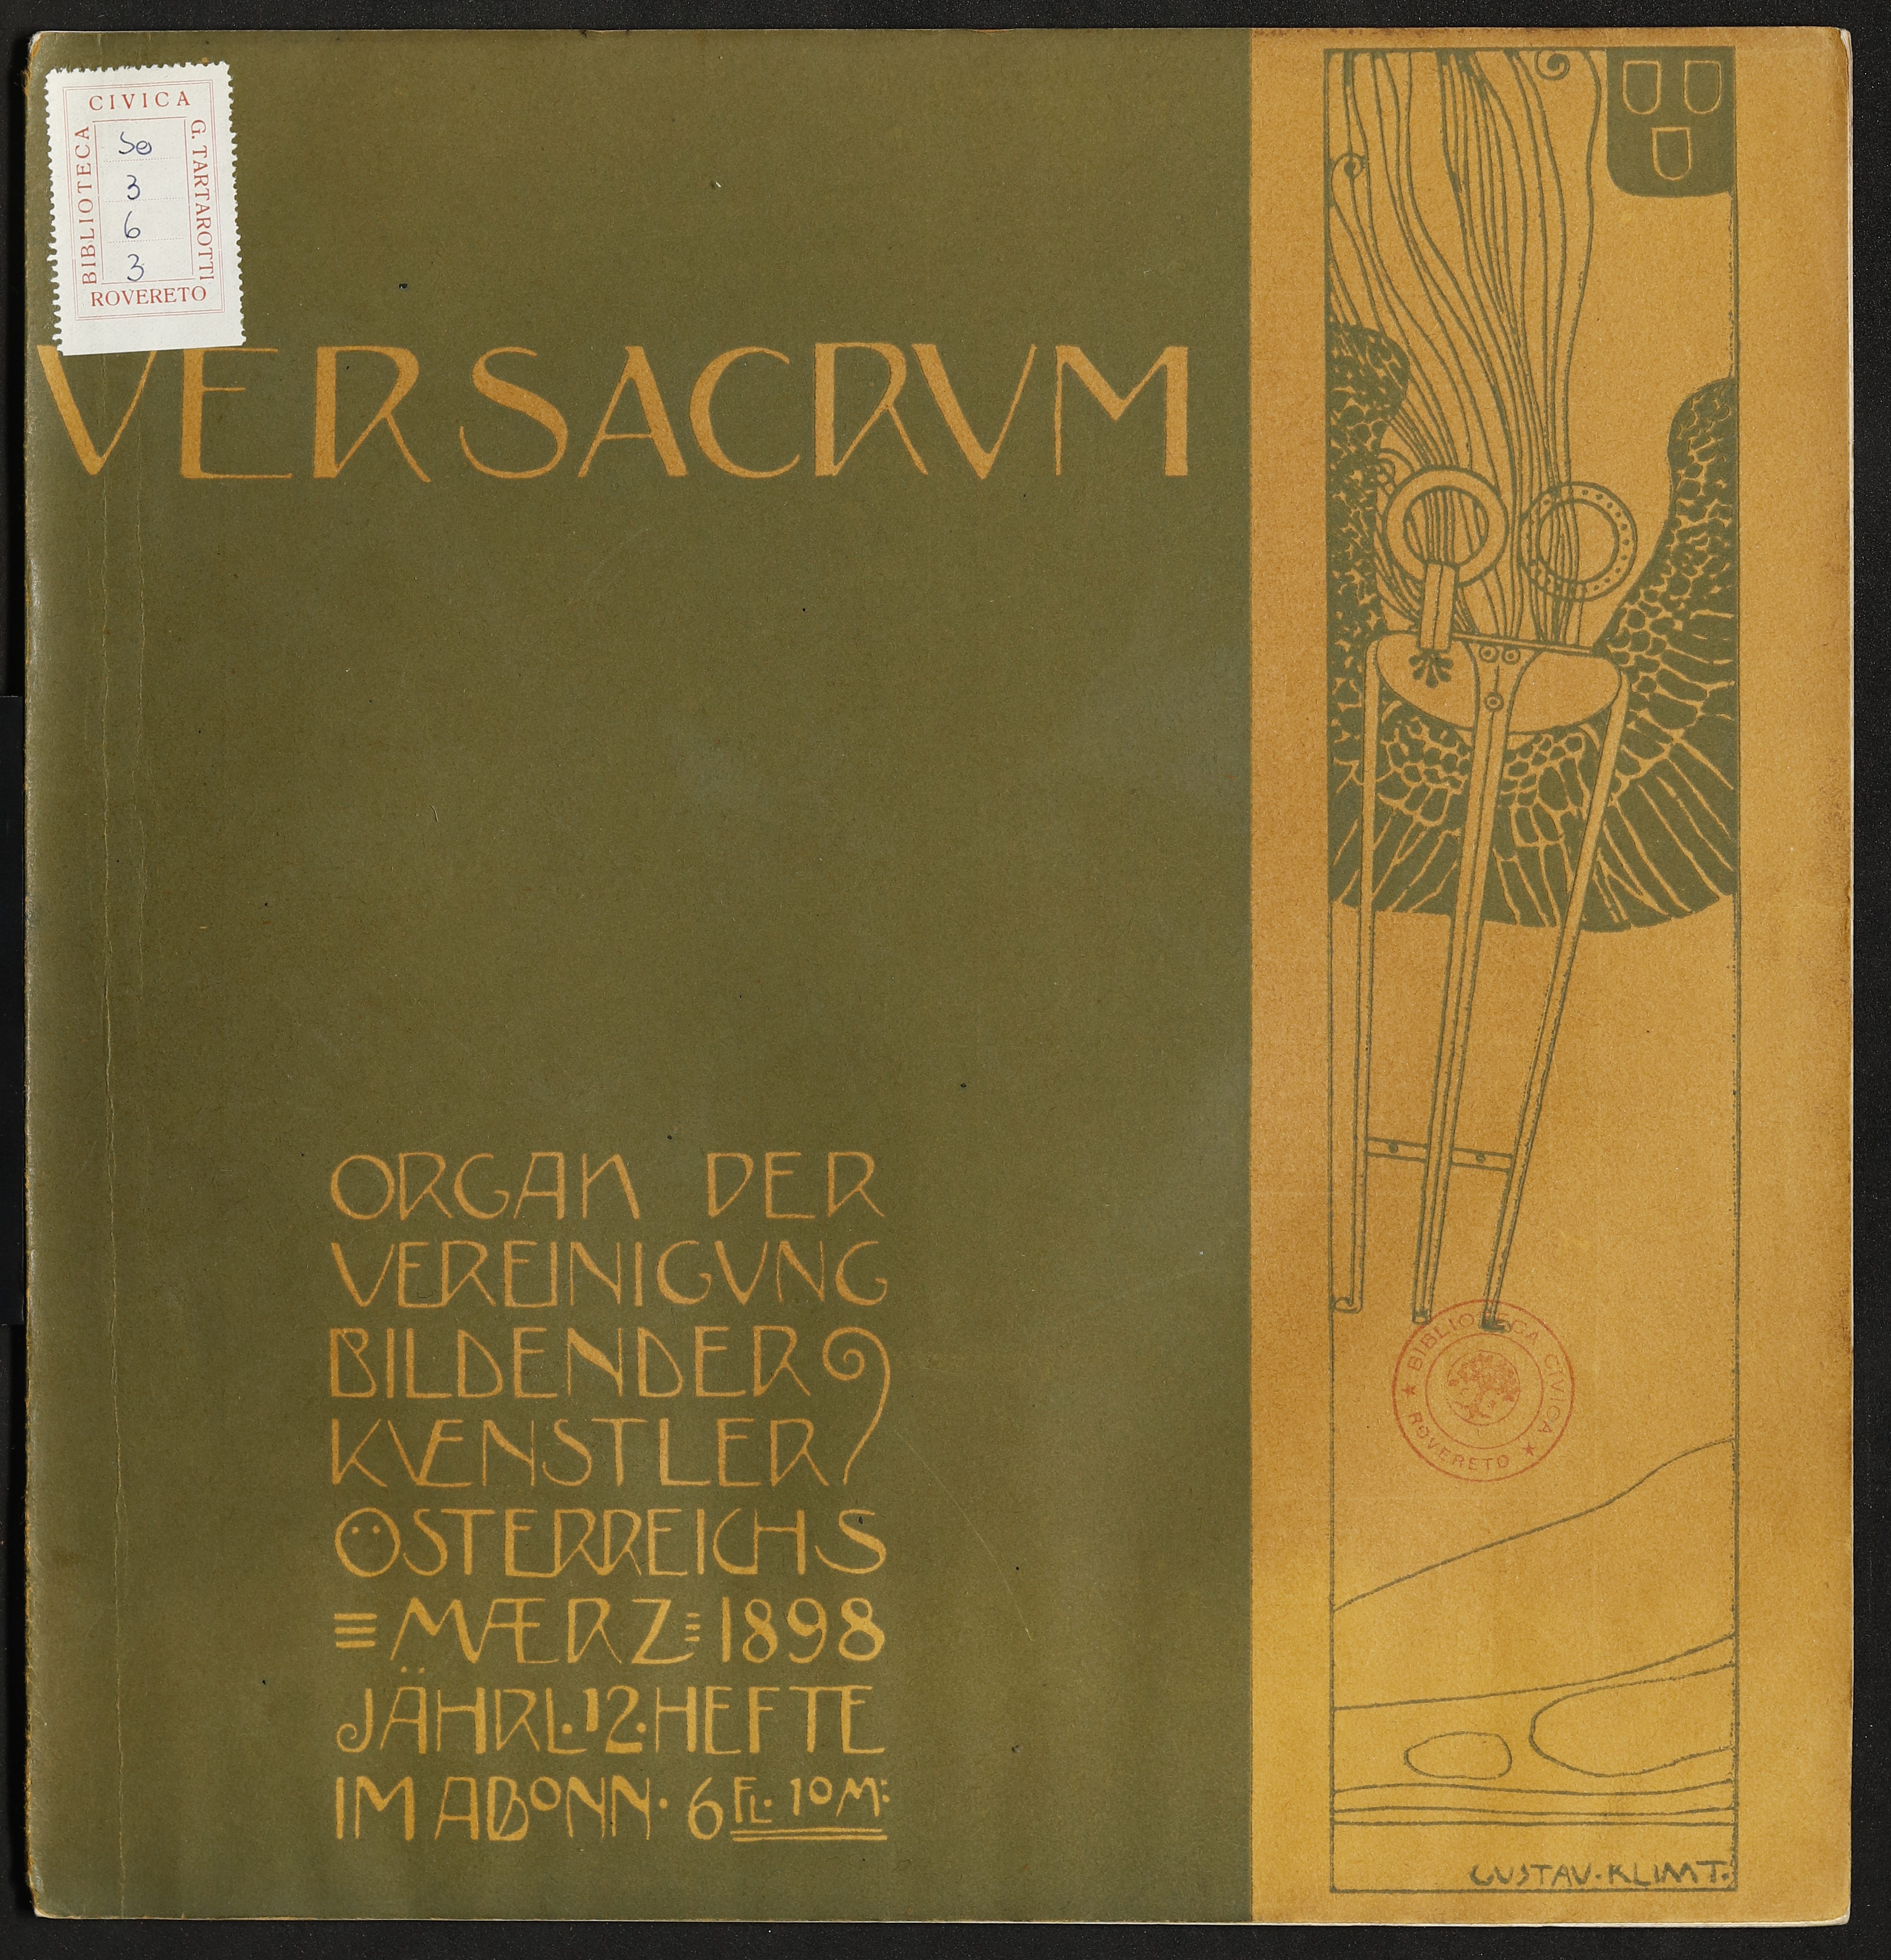 Ver Sacrum - marzo 1898